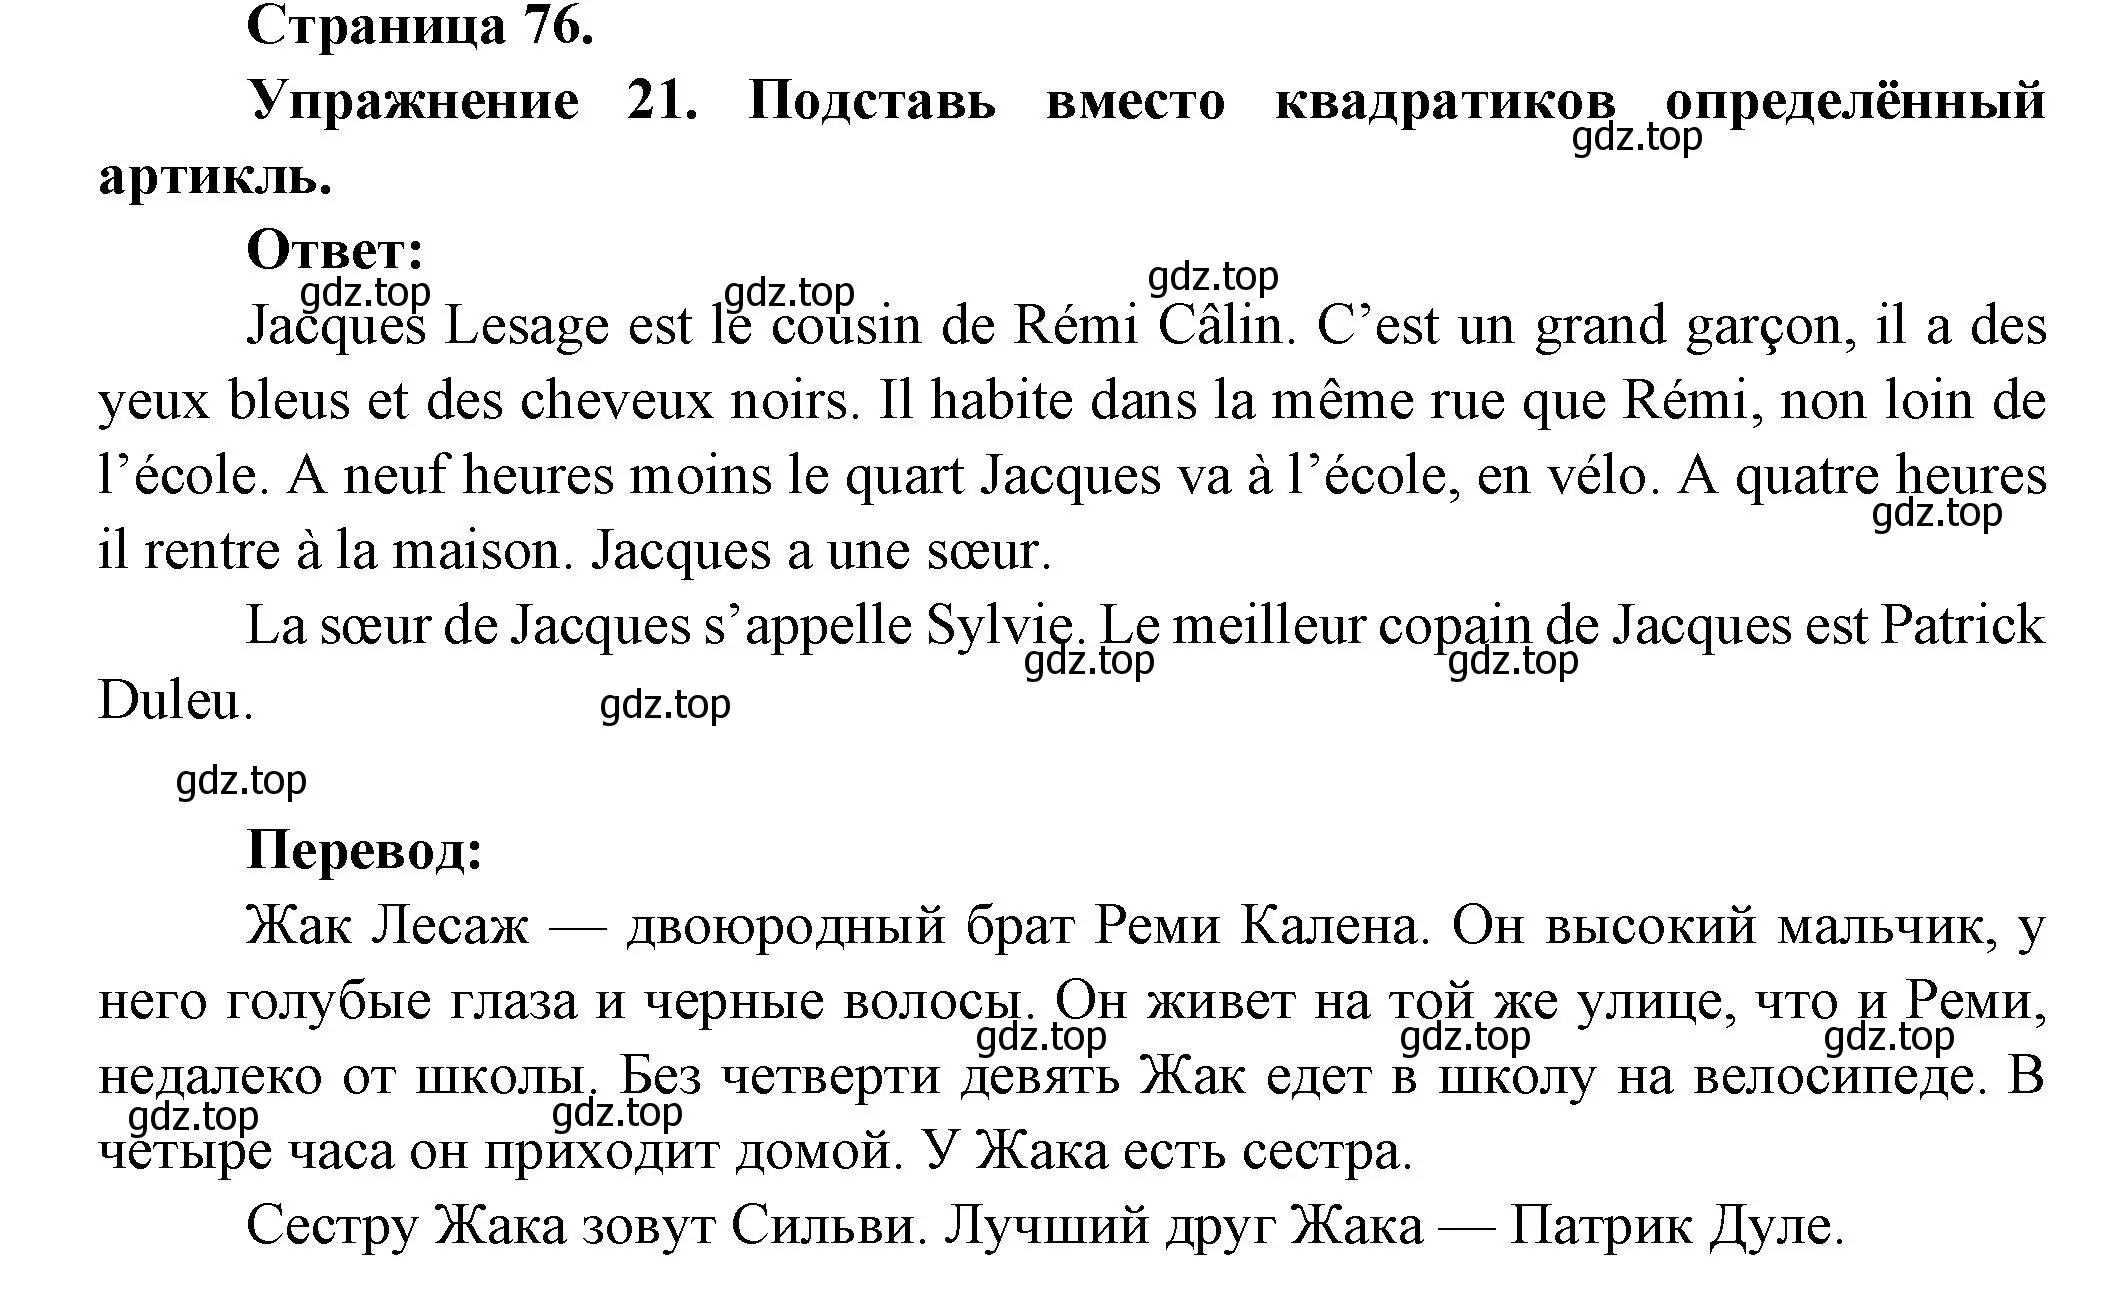 Решение номер 21 (страница 76) гдз по французскому языку 5 класс Береговская, Белосельская, учебник 1 часть